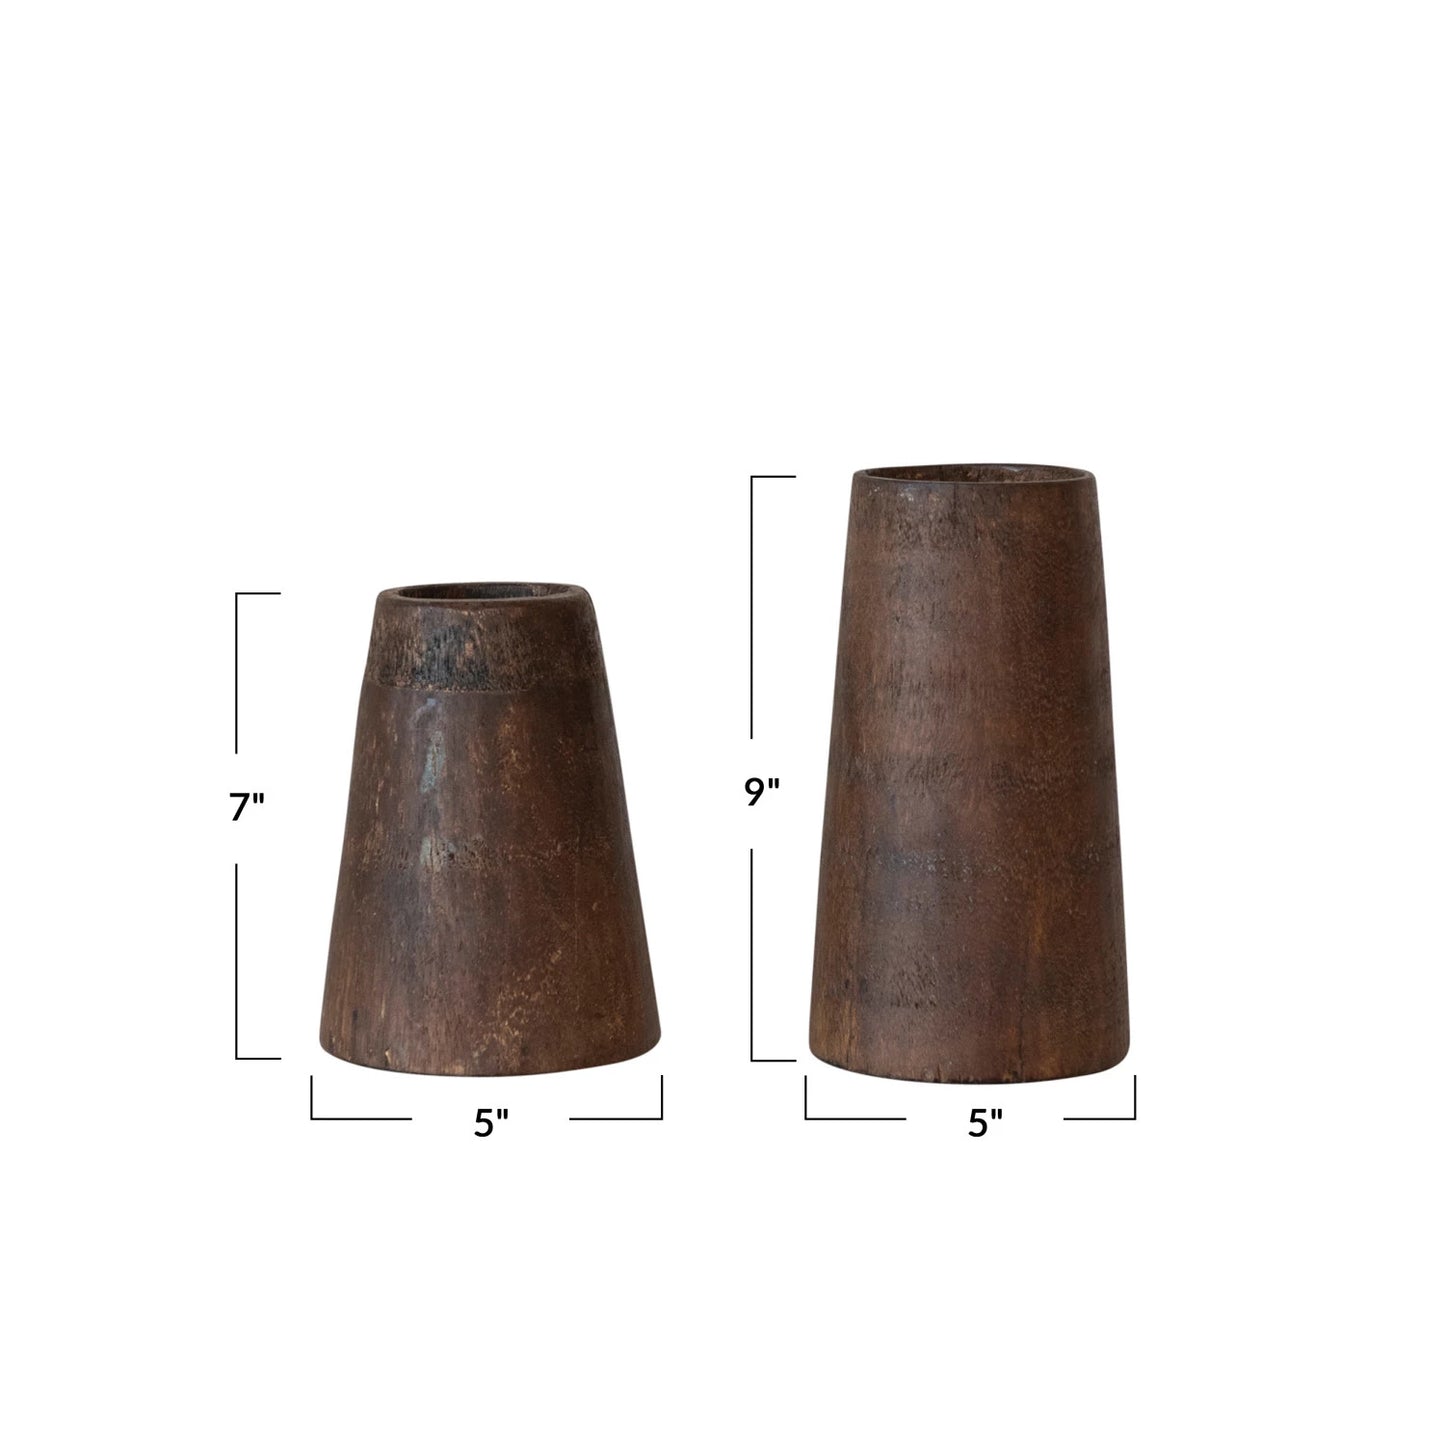 Found Wood Vase